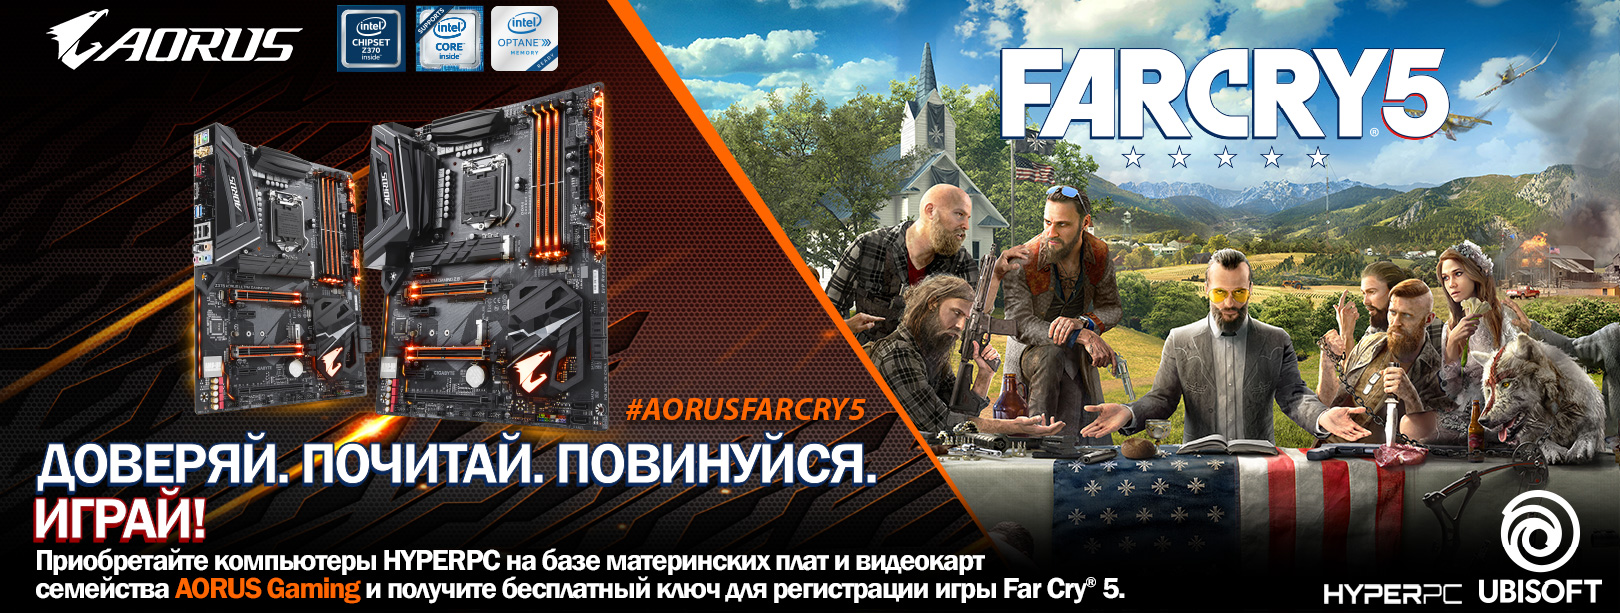 Far Cry 5 в подарок при покупке компьютера HYPERPC на базе AORUS